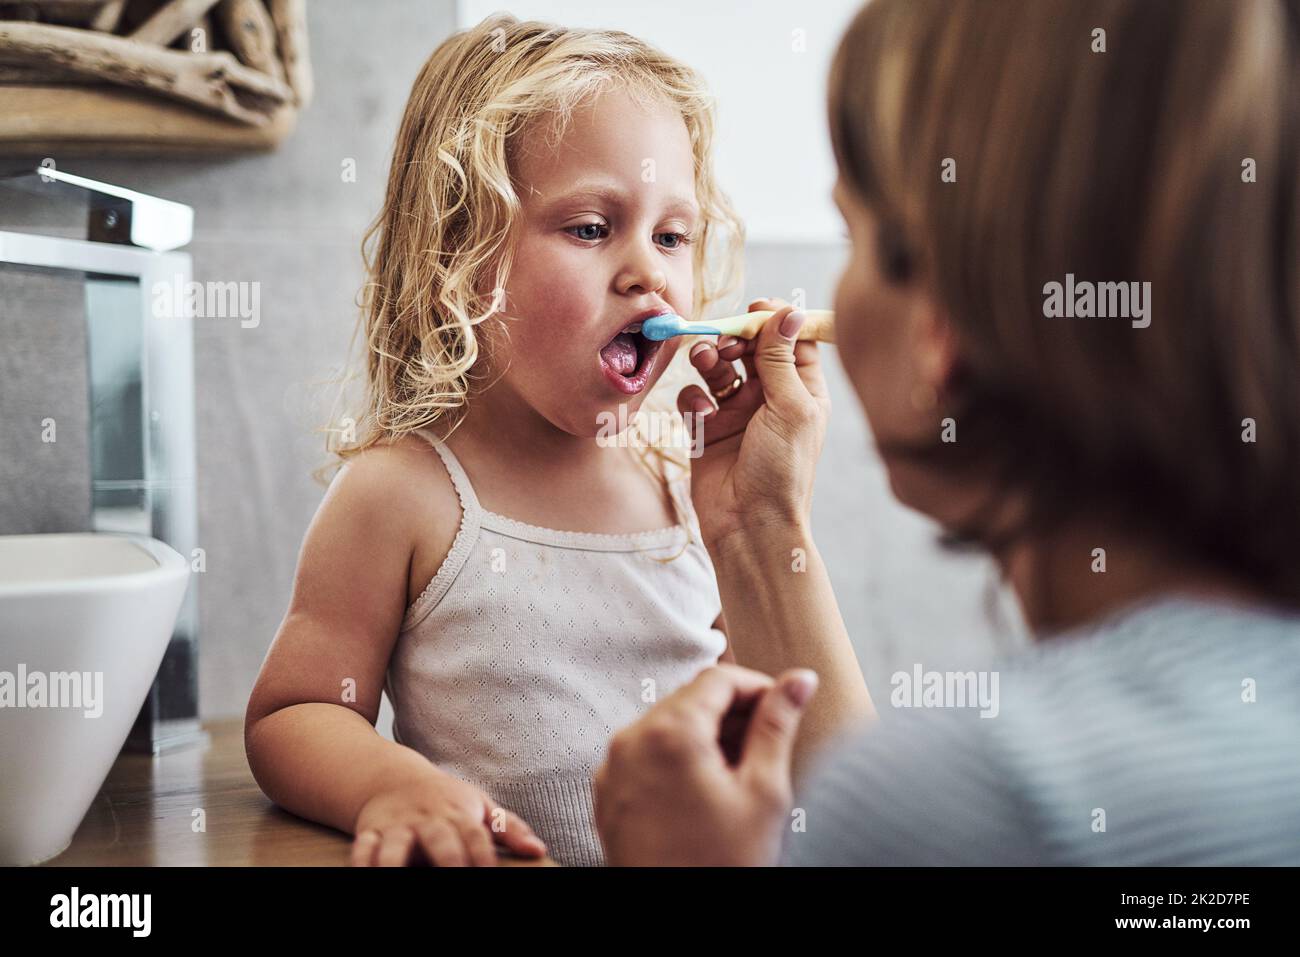 Sono io che lo faccio giusto mamma. Scatto corto di una bambina adorabile in piedi e ottenere aiuto da sua madre mentre le spazzolava i denti. Foto Stock